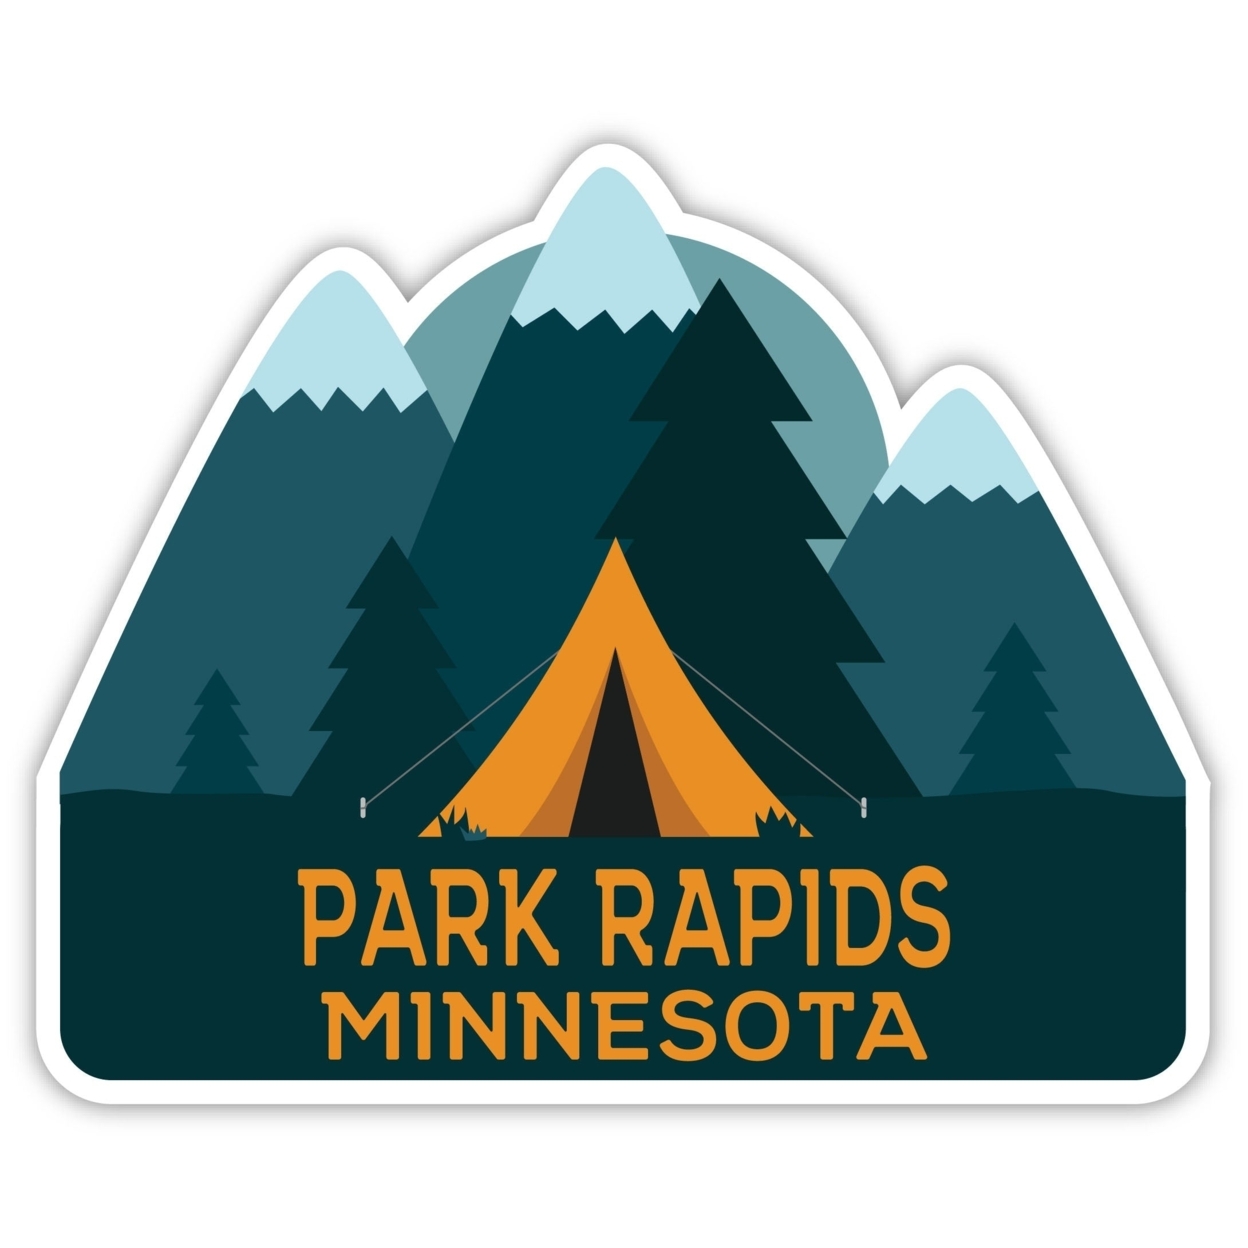 Park Rapids Minnesota Souvenir Decorative Stickers (Choose Theme And Size) - Single Unit, 4-Inch, Tent